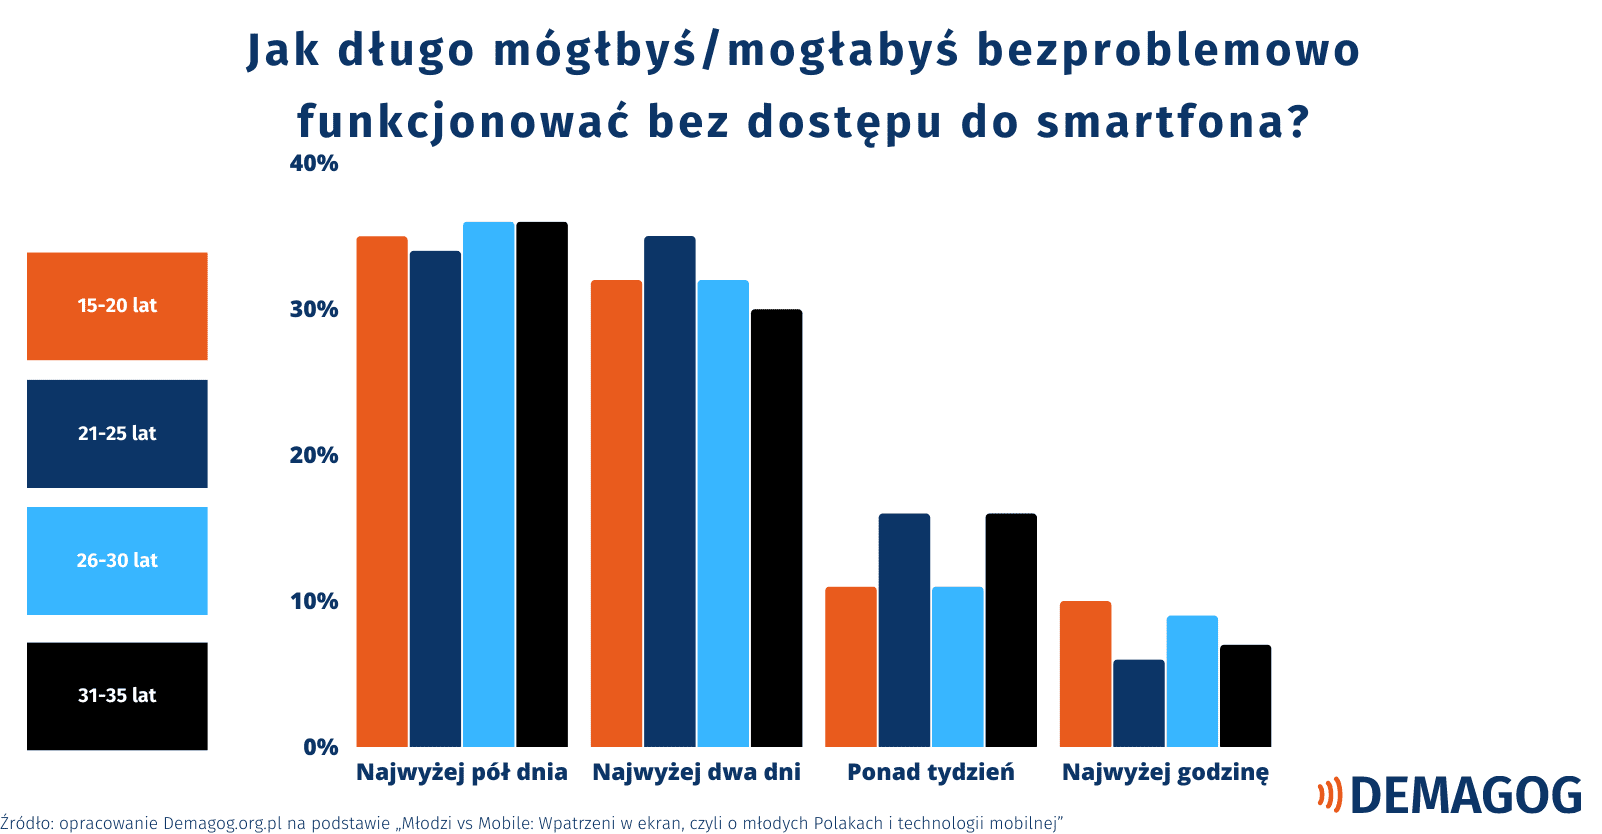 Wykres przedstawiający odpowiedzi an pytanie, jak długo młode osoby mogłyby bezproblemowo funkcjonować bez dostępu do smartfona.